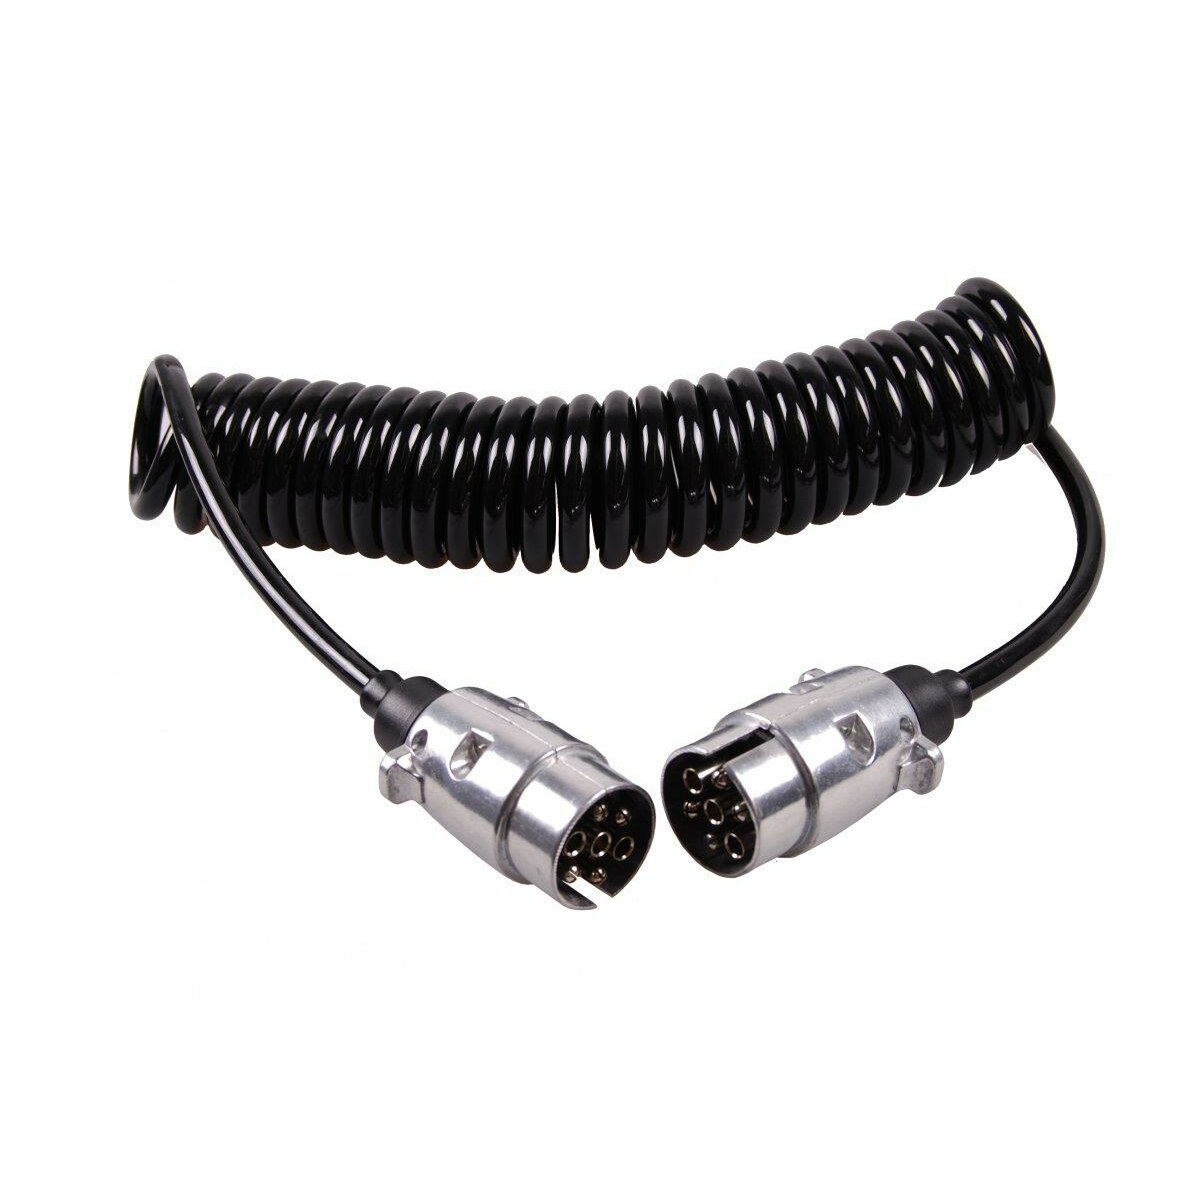 https://www.traipex.com/media/image/product/5531/lg/spiralkabel-7-polig-gestreckt-ca-3-m-kabel.jpg